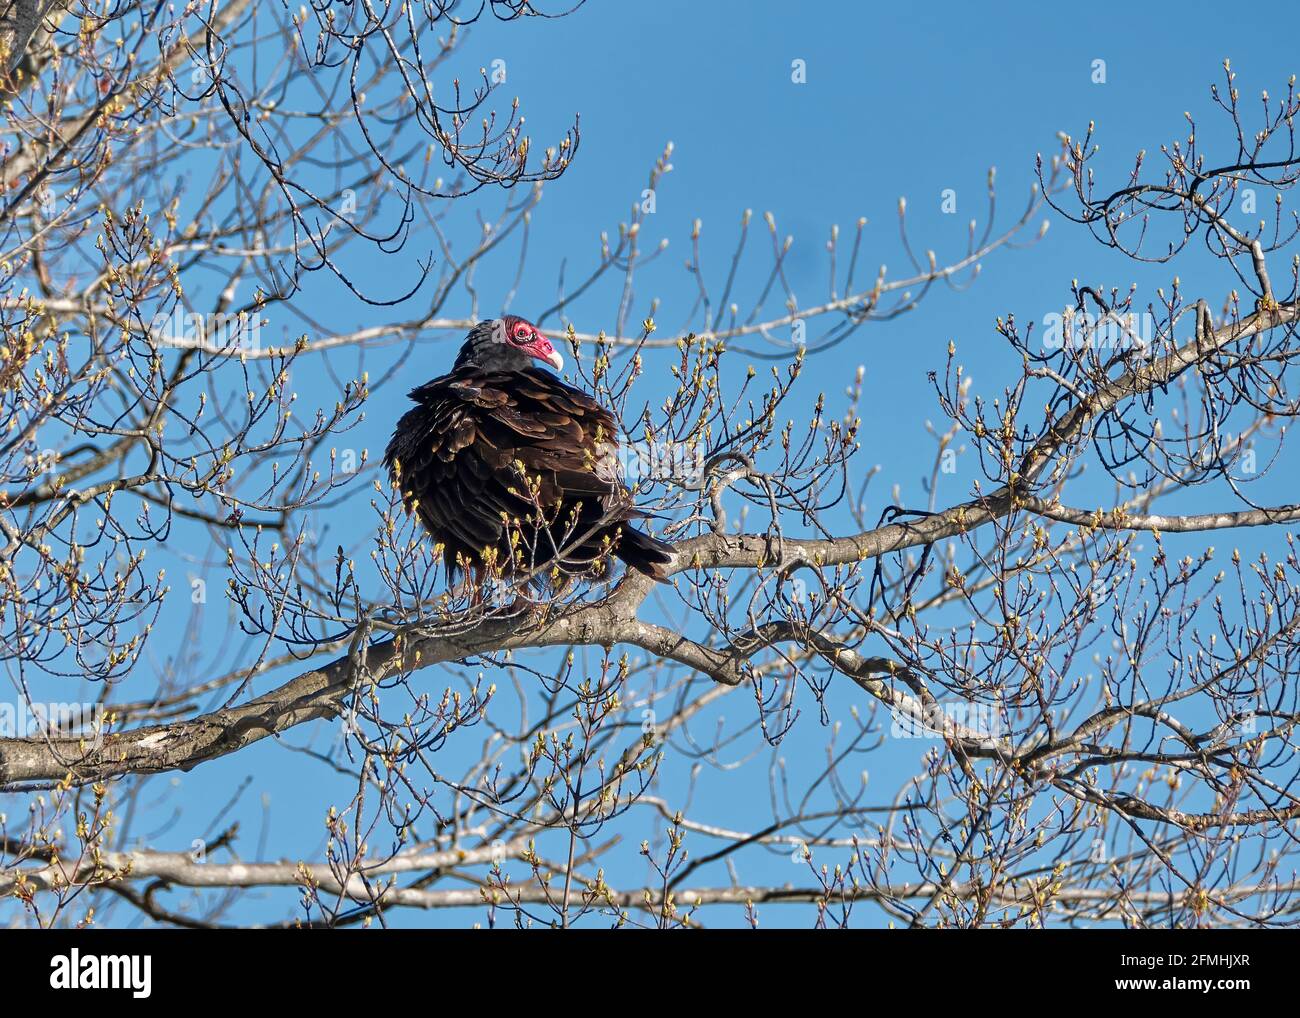 L'œil et le bec rouge vif contrastent fortement avec le plumage sombre d'un vautour de dinde qui perce dans un arbre au début du printemps, alors que les bourgeons commencent à fleurir. Banque D'Images